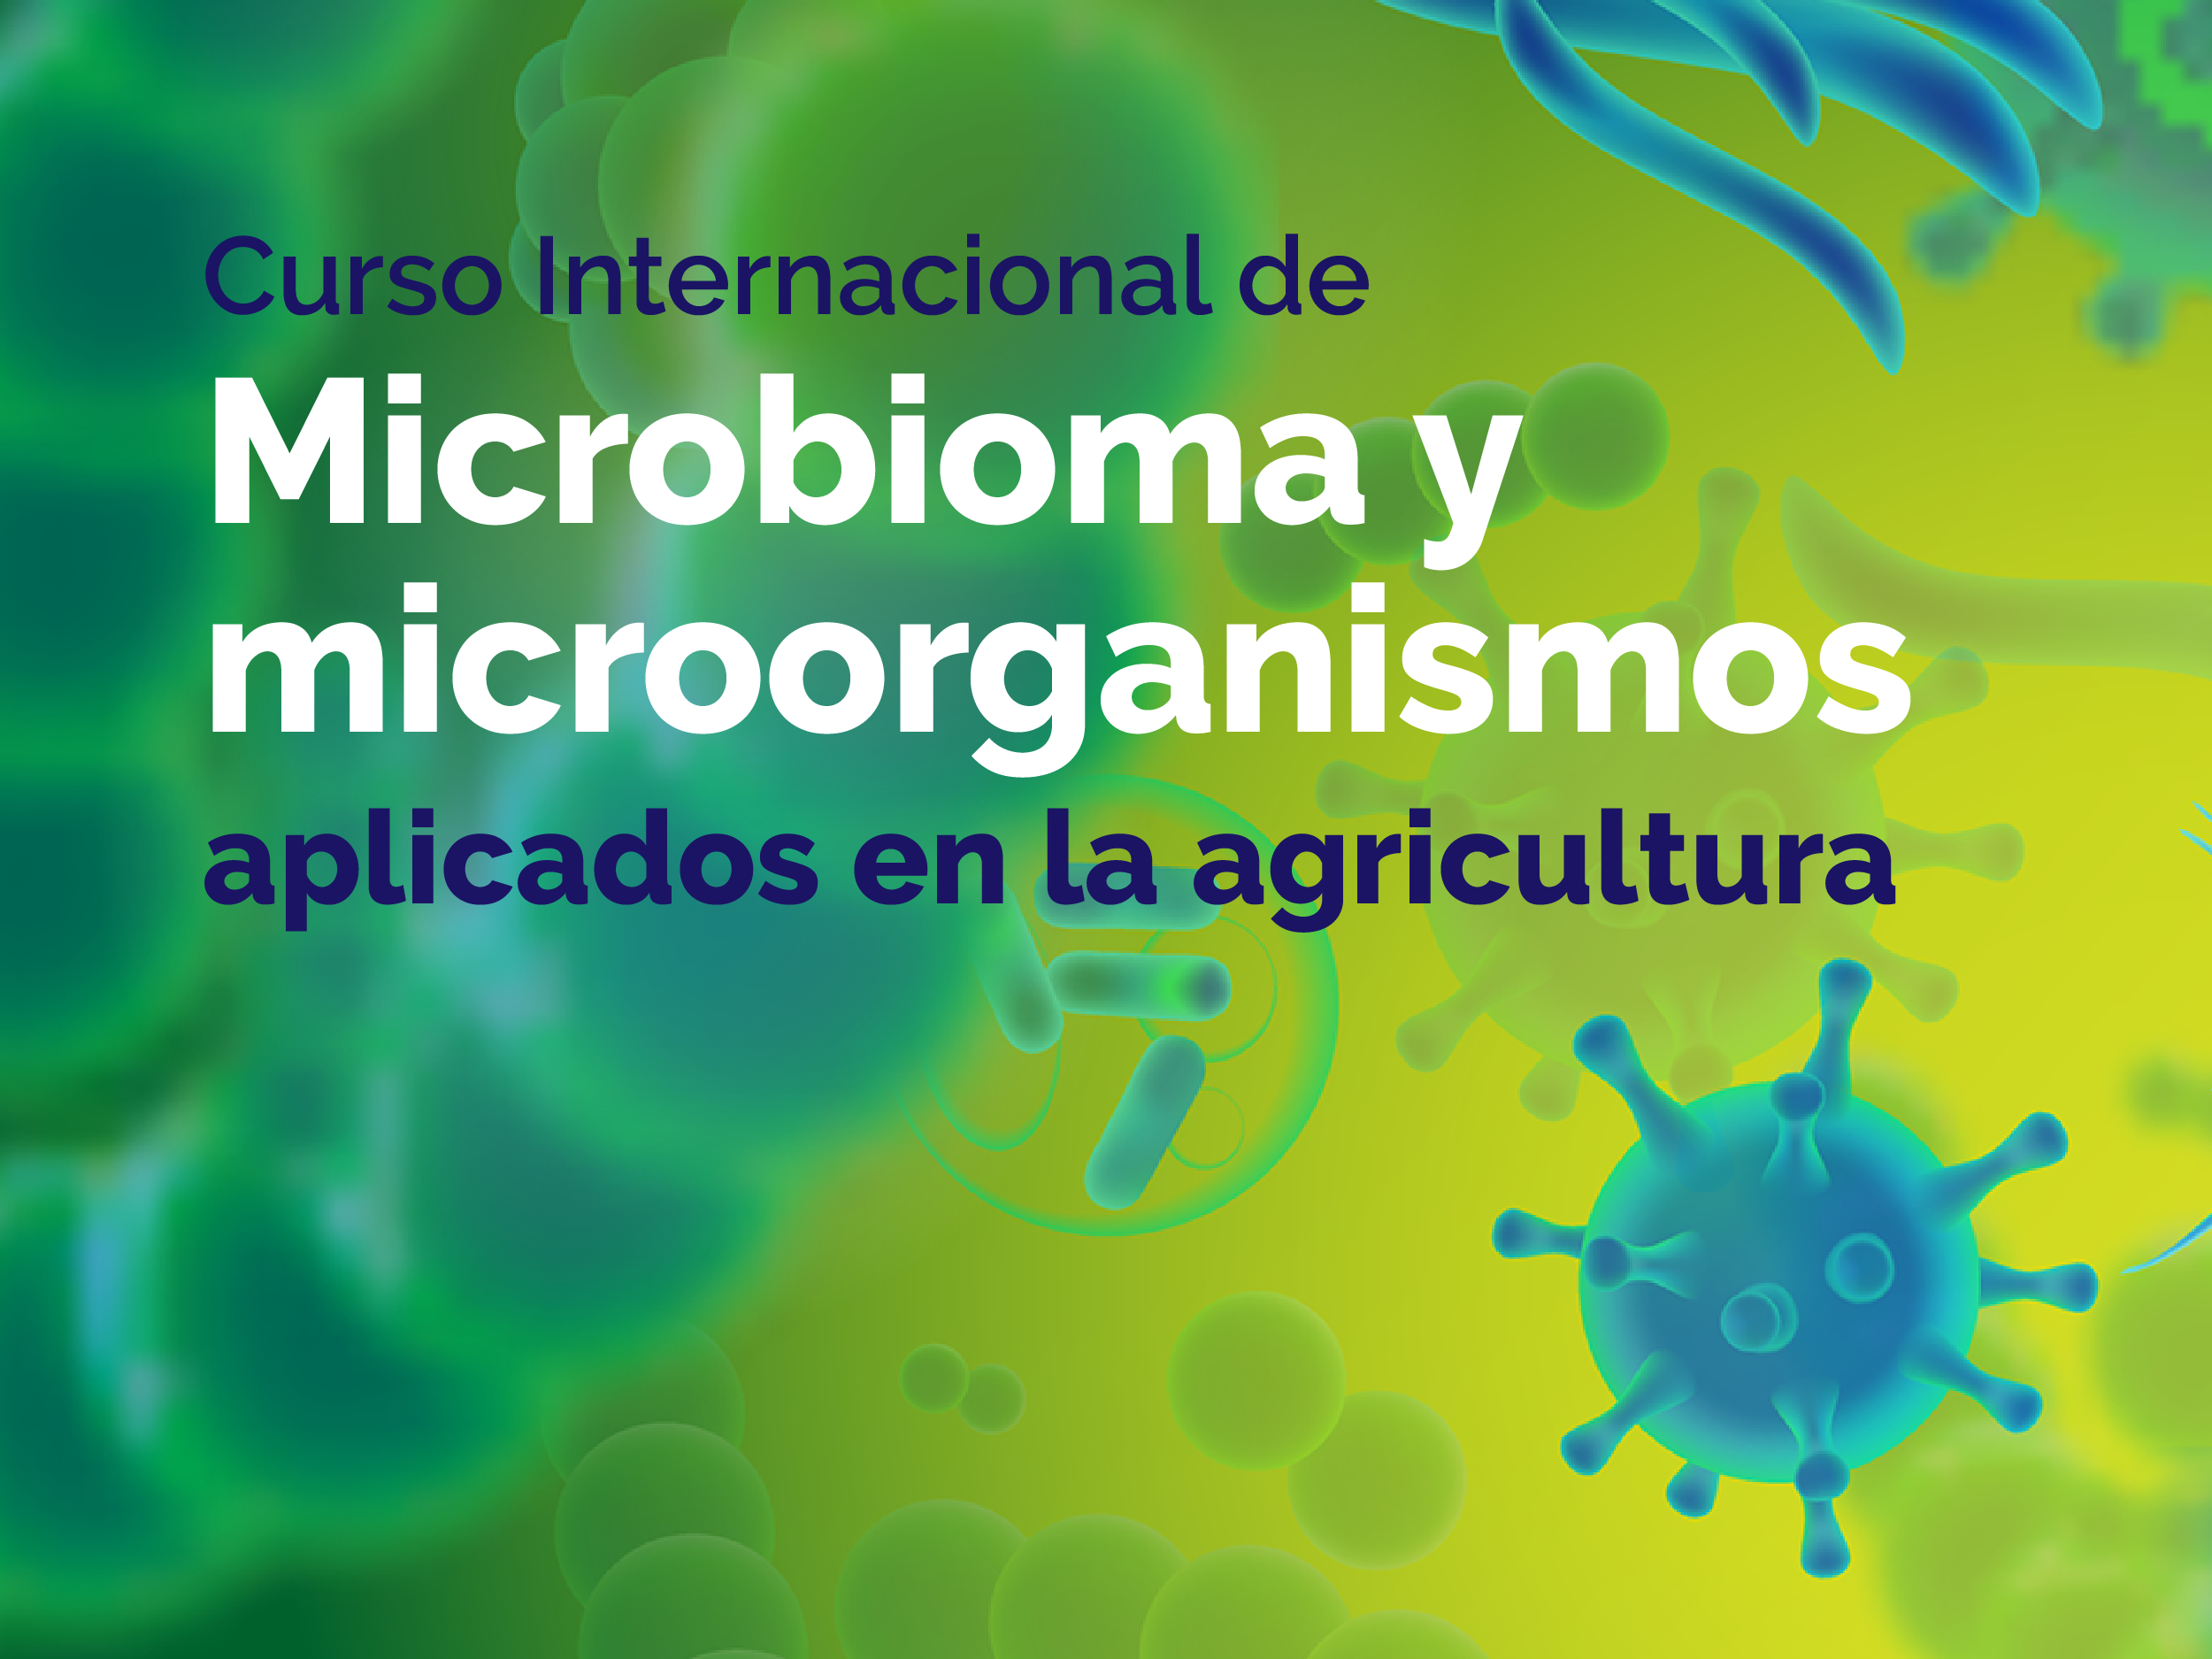 Nuevo Curso Internacional de Microbioma y microorganismos aplicados en la agricultura